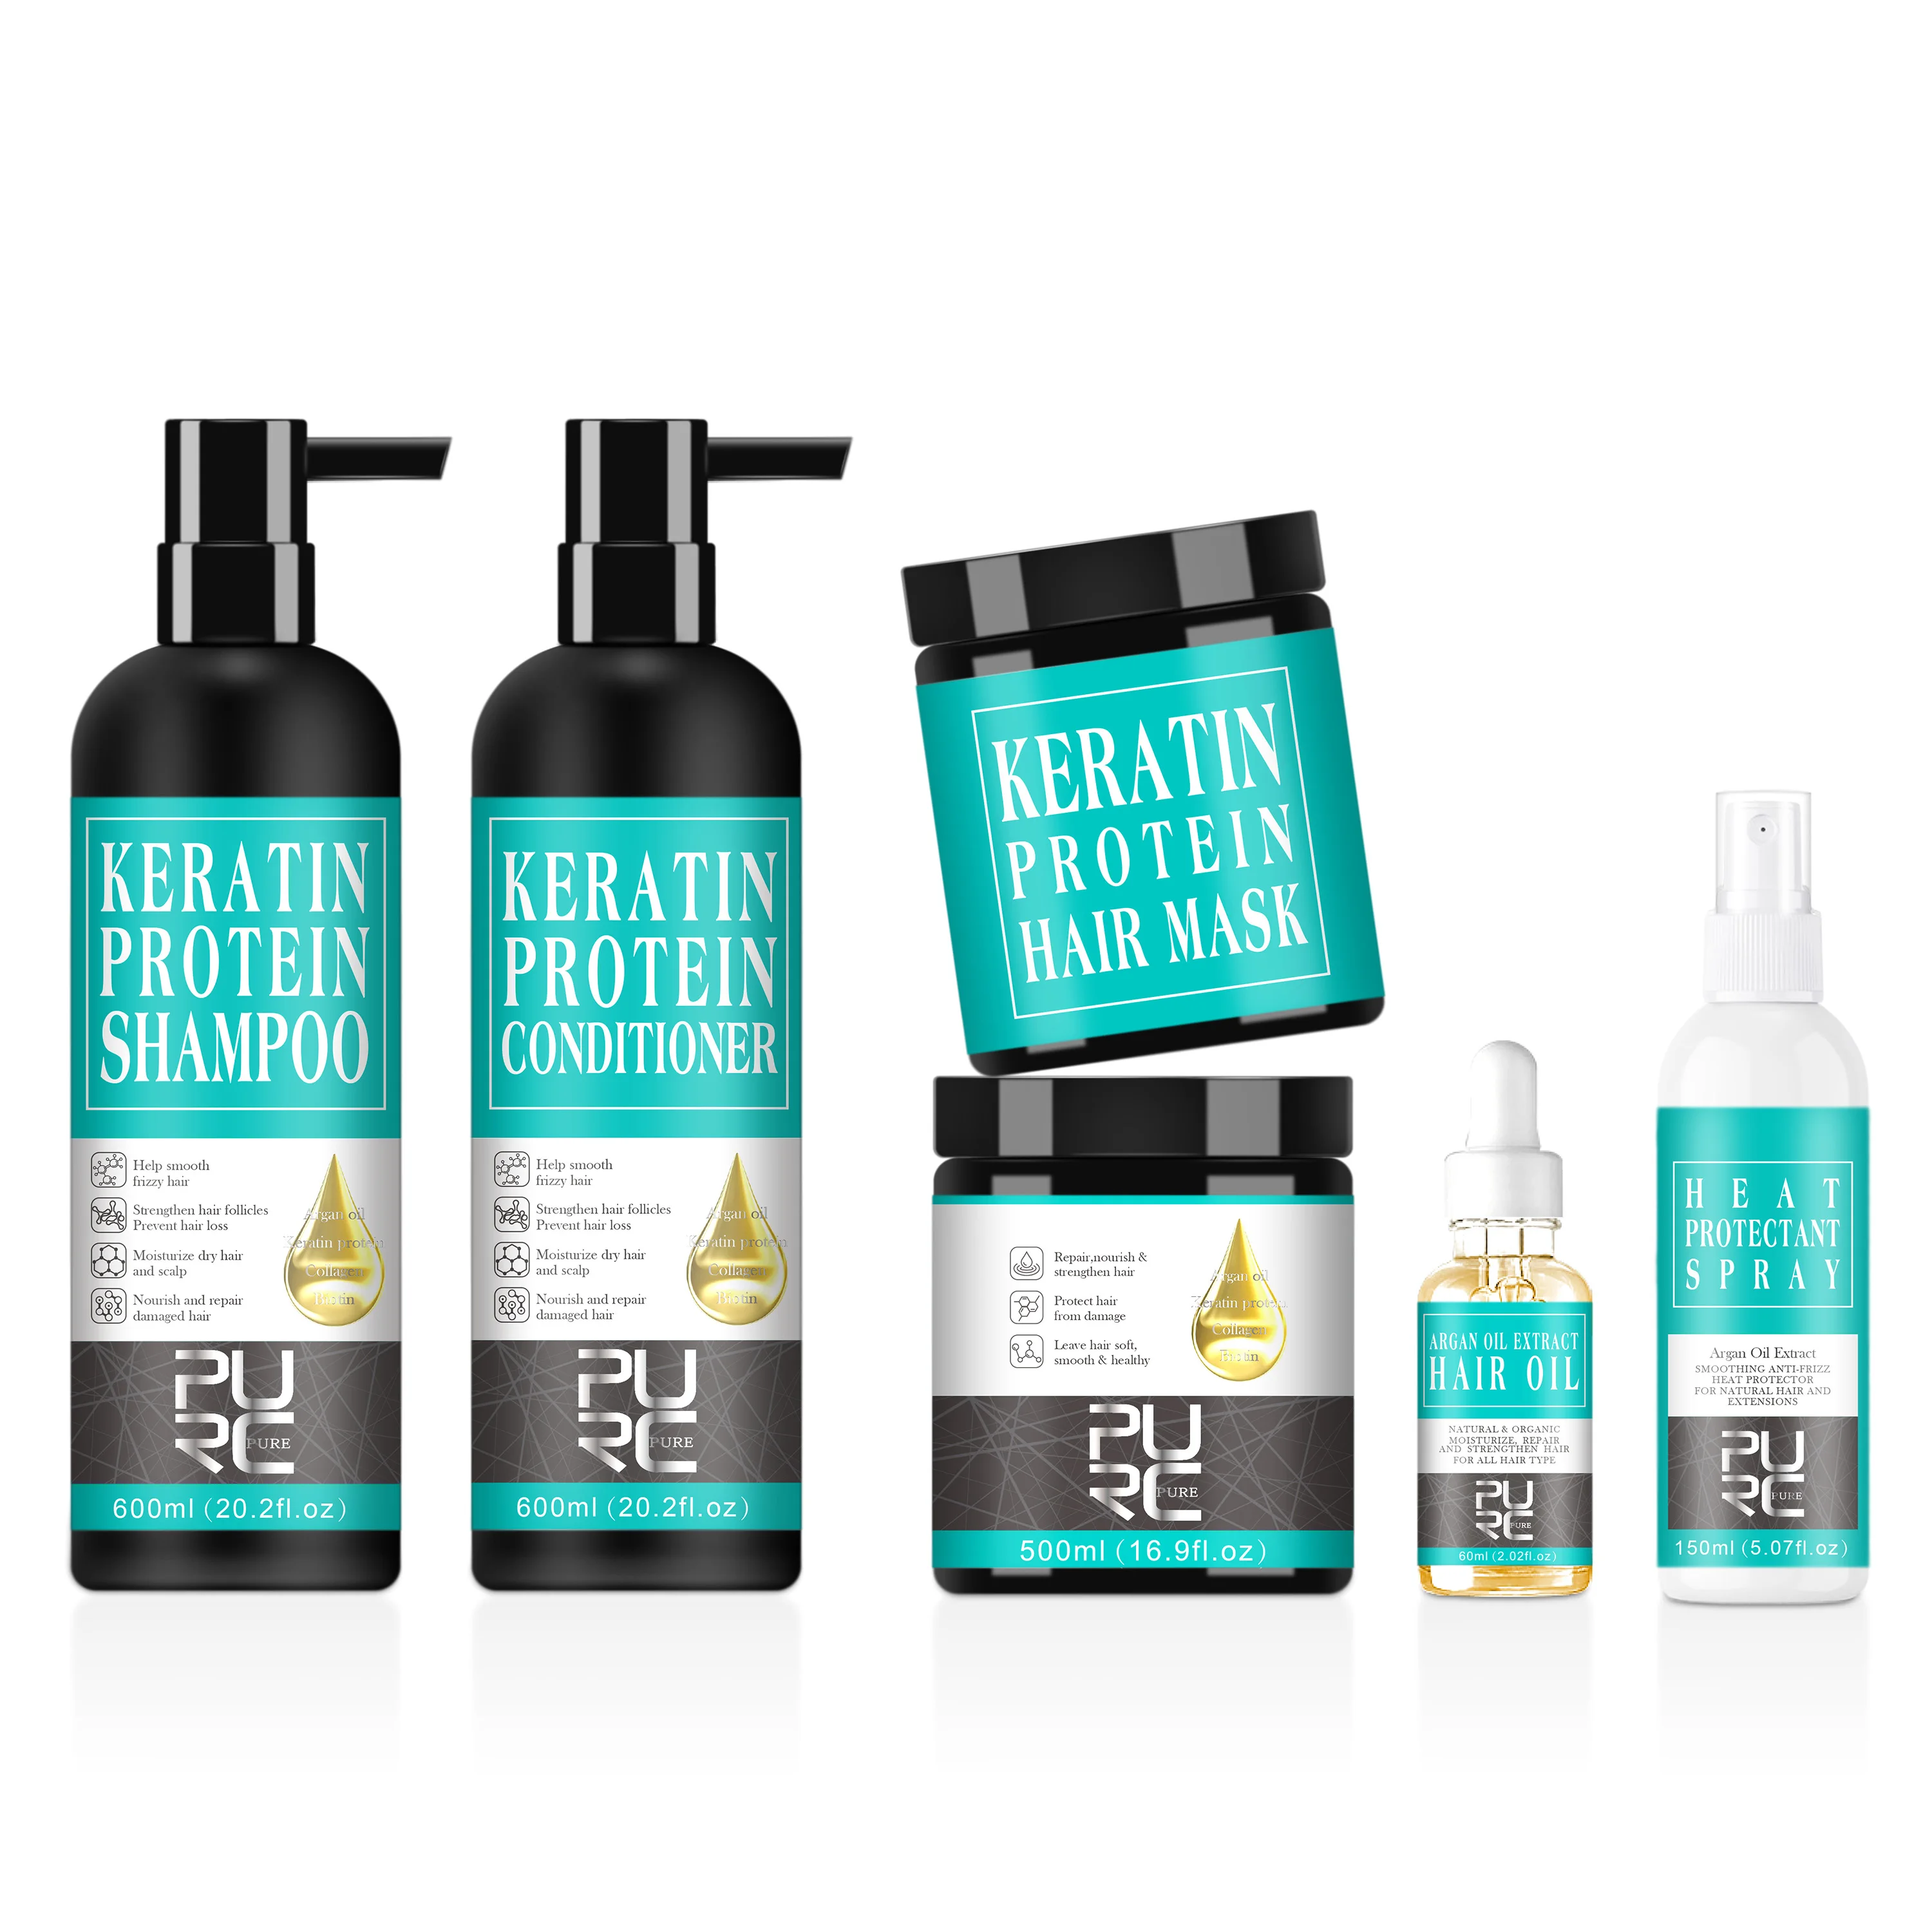 

Custom Salon Keratin Protein Shampoo Sulfate Free Organic Biotin Collagen Anti Hair Loss Shampoo And Conditioner Private Label